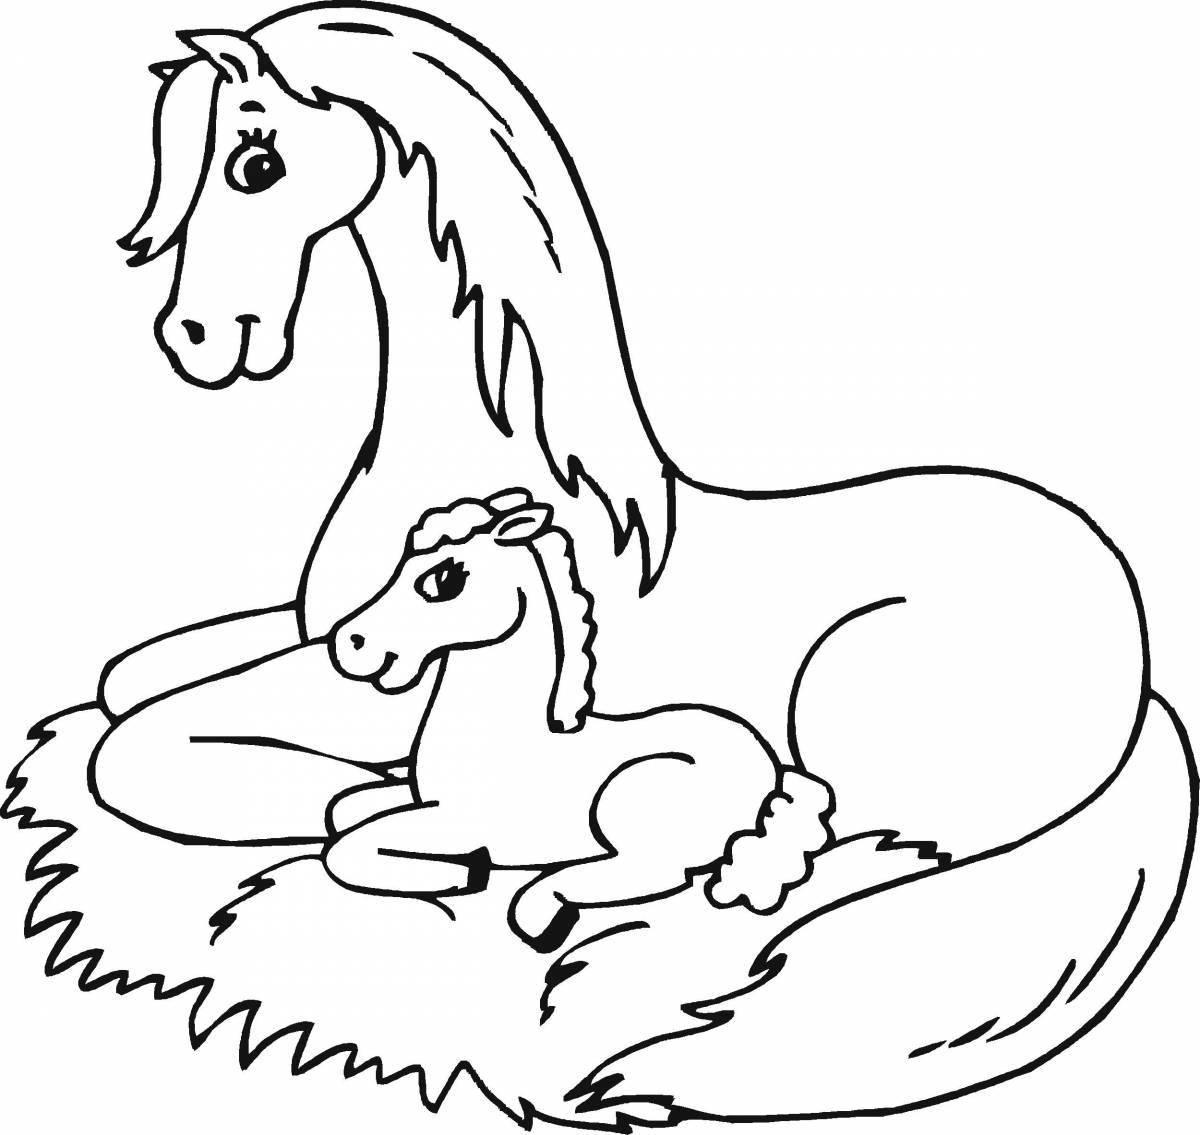 Красочная раскраска лошадь для детей